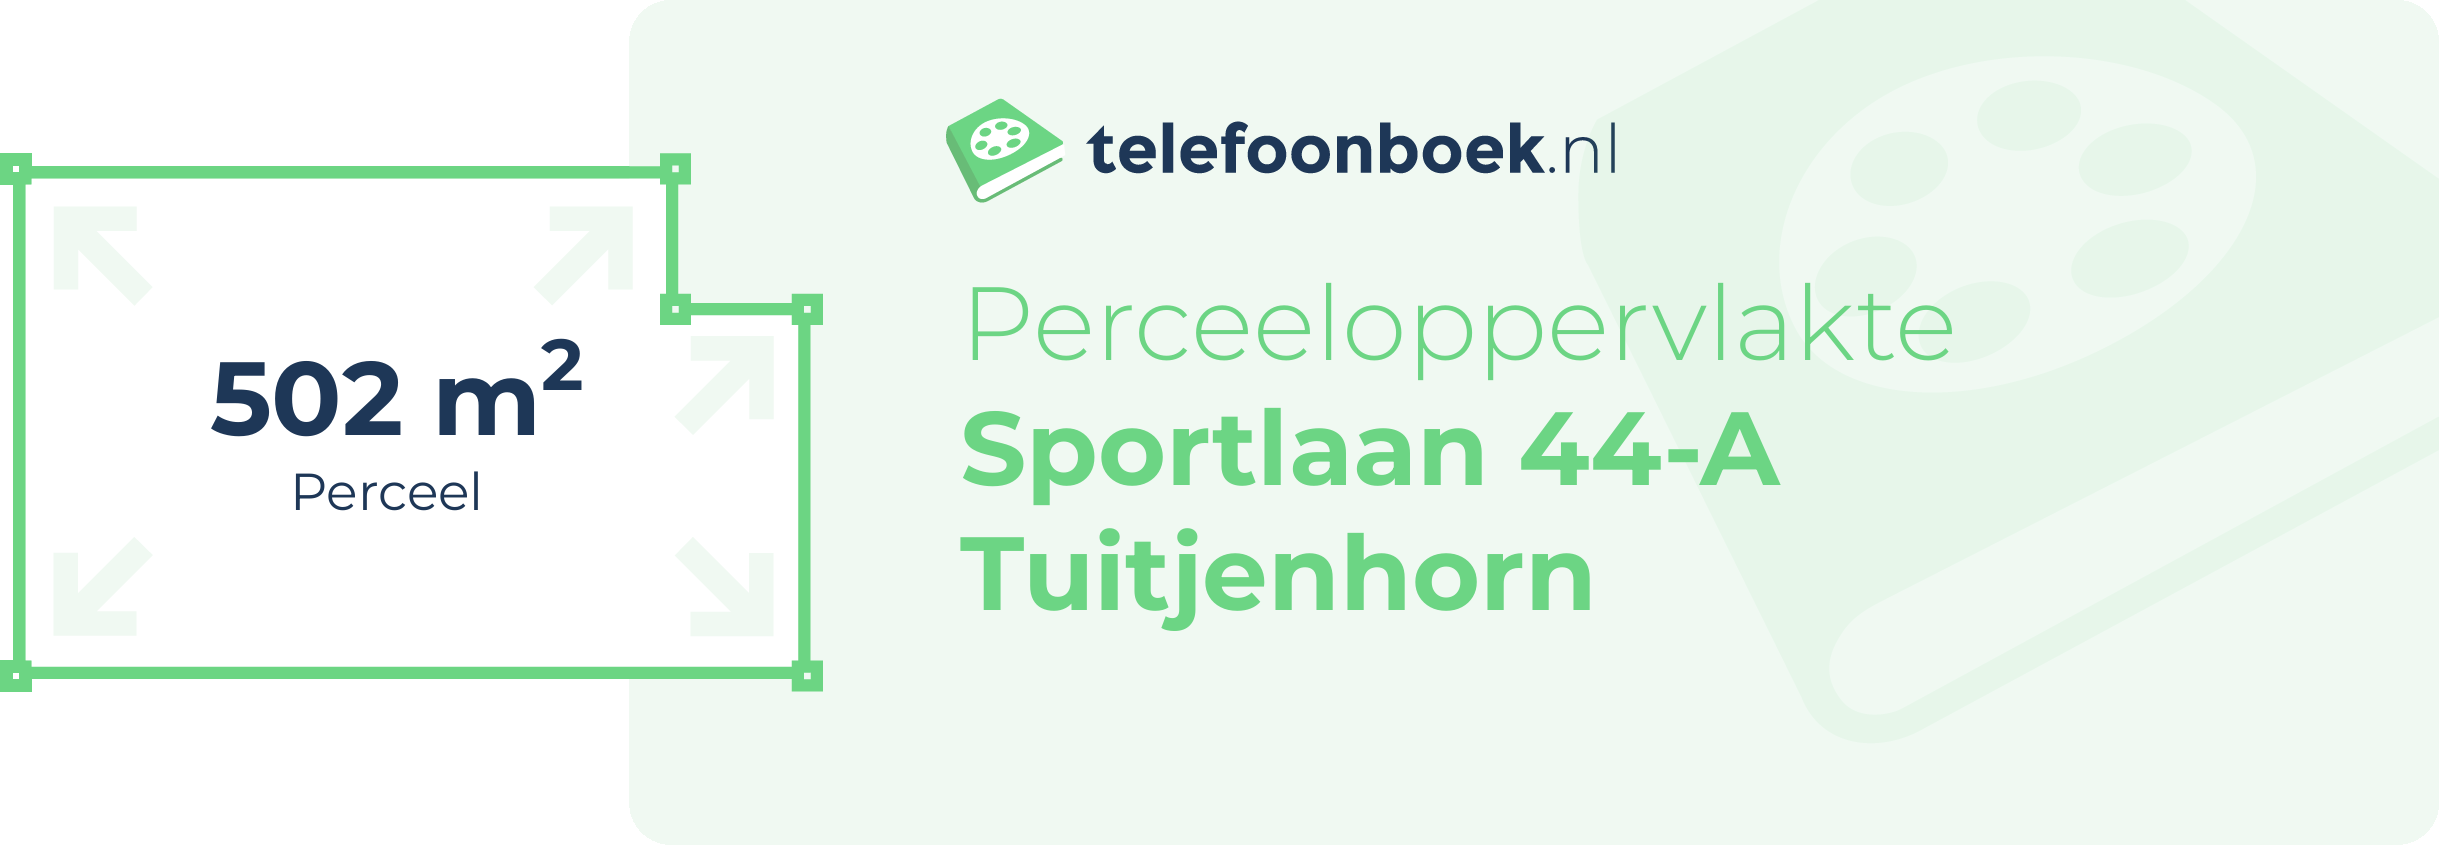 Perceeloppervlakte Sportlaan 44-A Tuitjenhorn